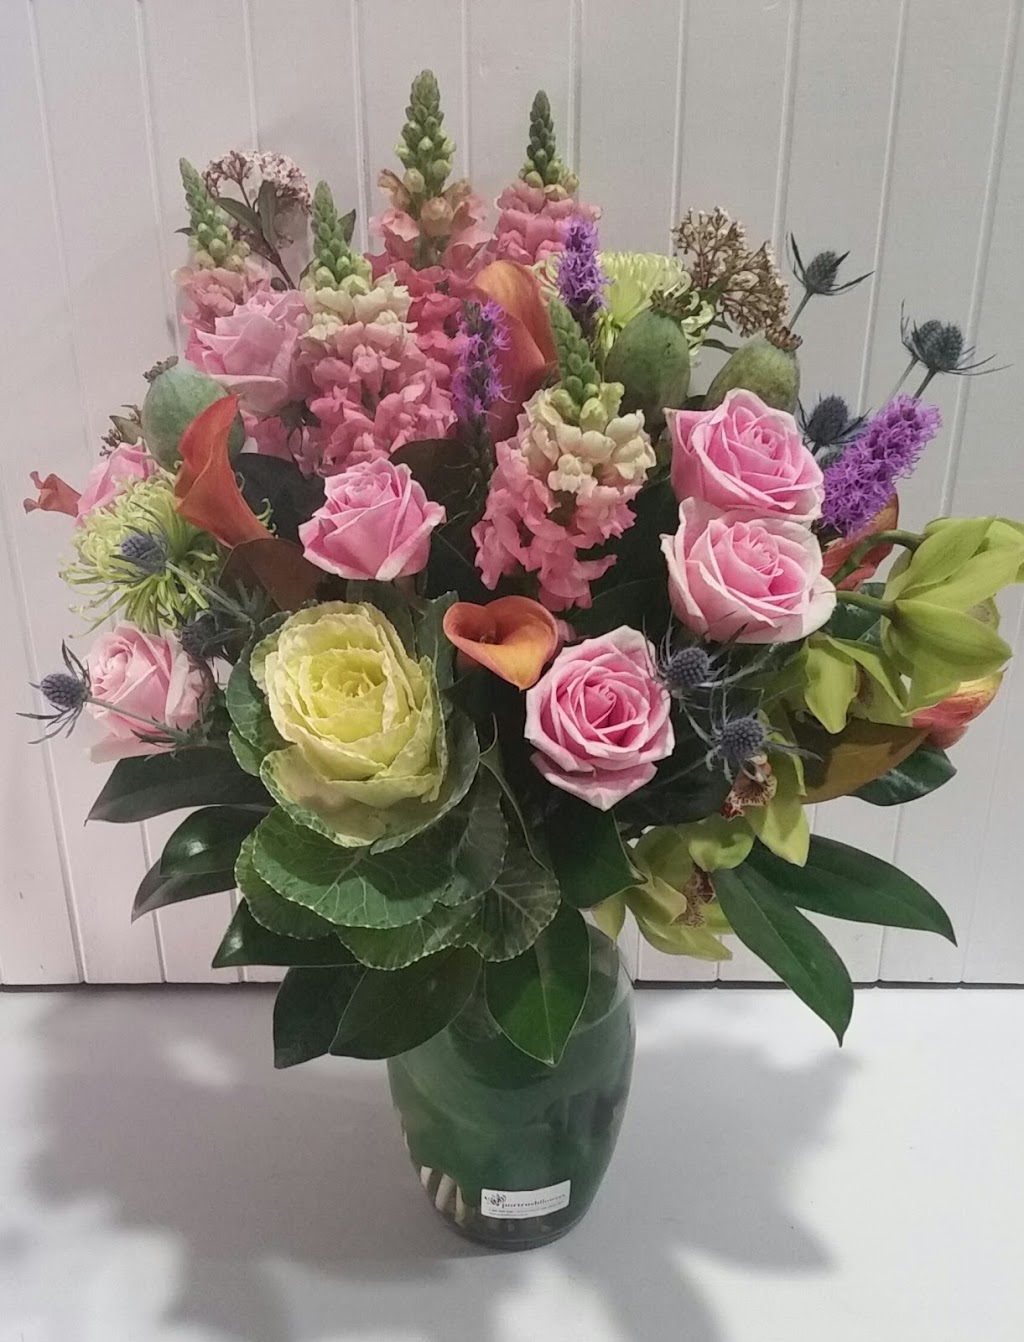 Portrush Flowers | florist | 50 Lower Portrush Rd, Marden SA 5070, Australia | 0872257539 OR +61 8 7225 7539